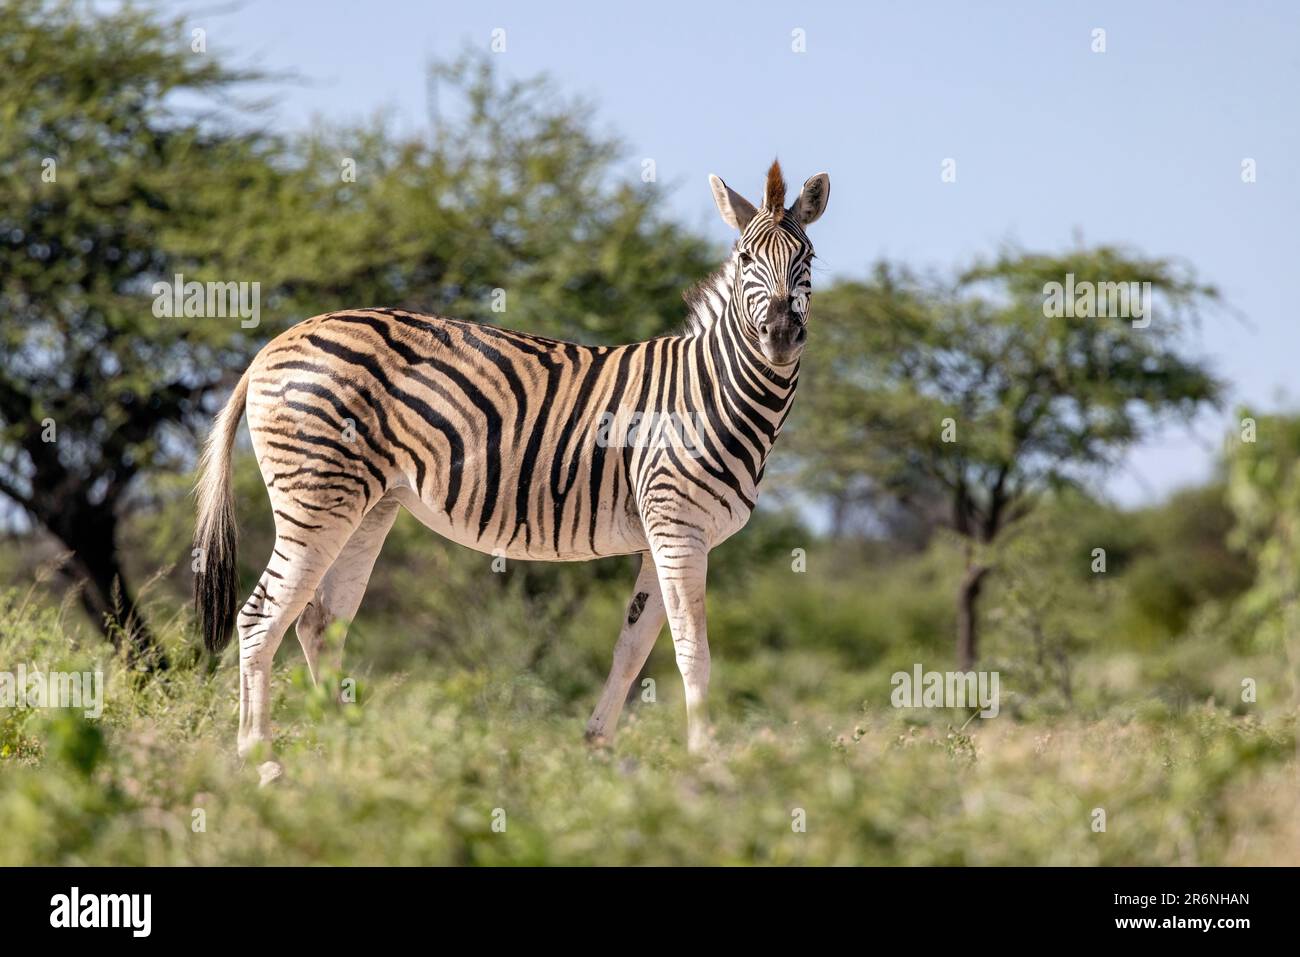 Zèbre des plaines (Equus quagga, anciennement Equus burchellii) - Onkolo Hide, Onguma Game Reserve, Namibie, Afrique Banque D'Images